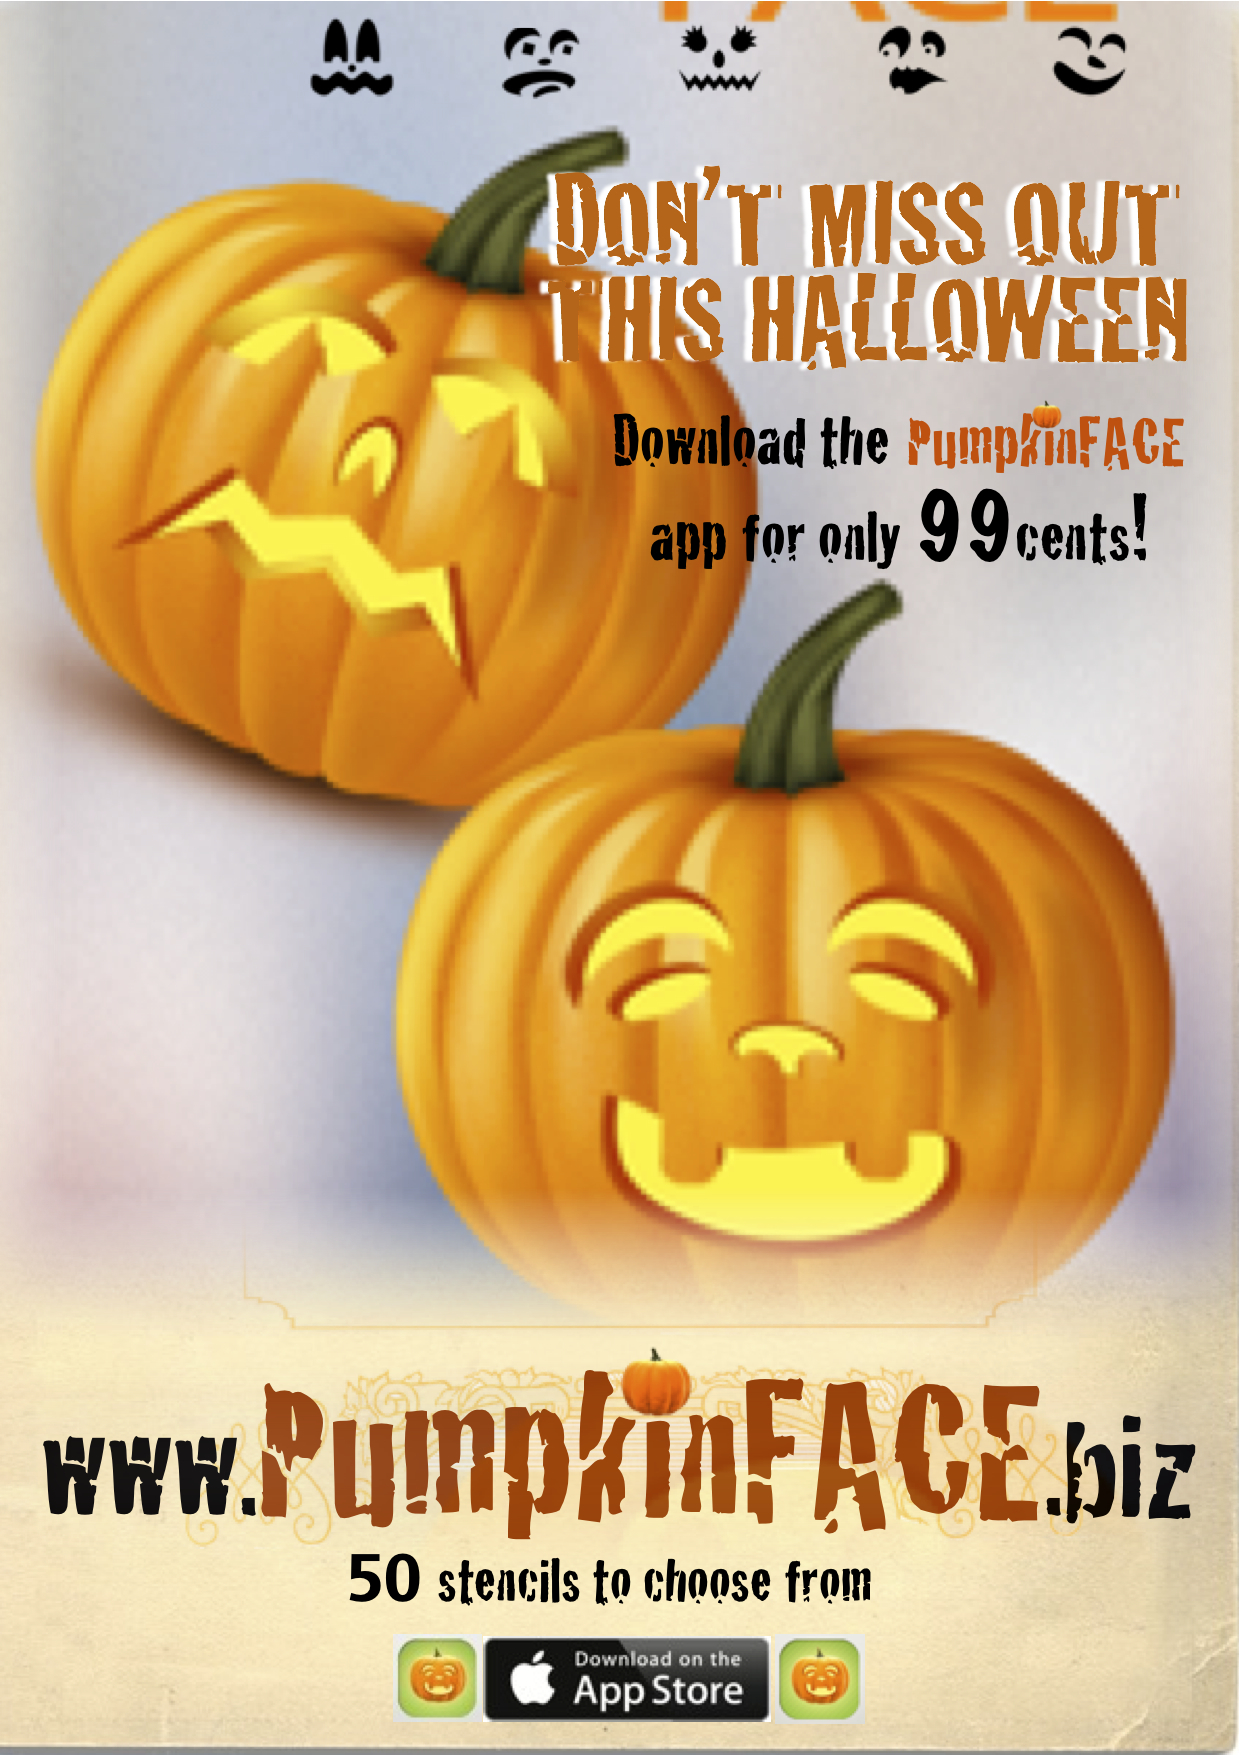 PumpkinFACE_poster launch